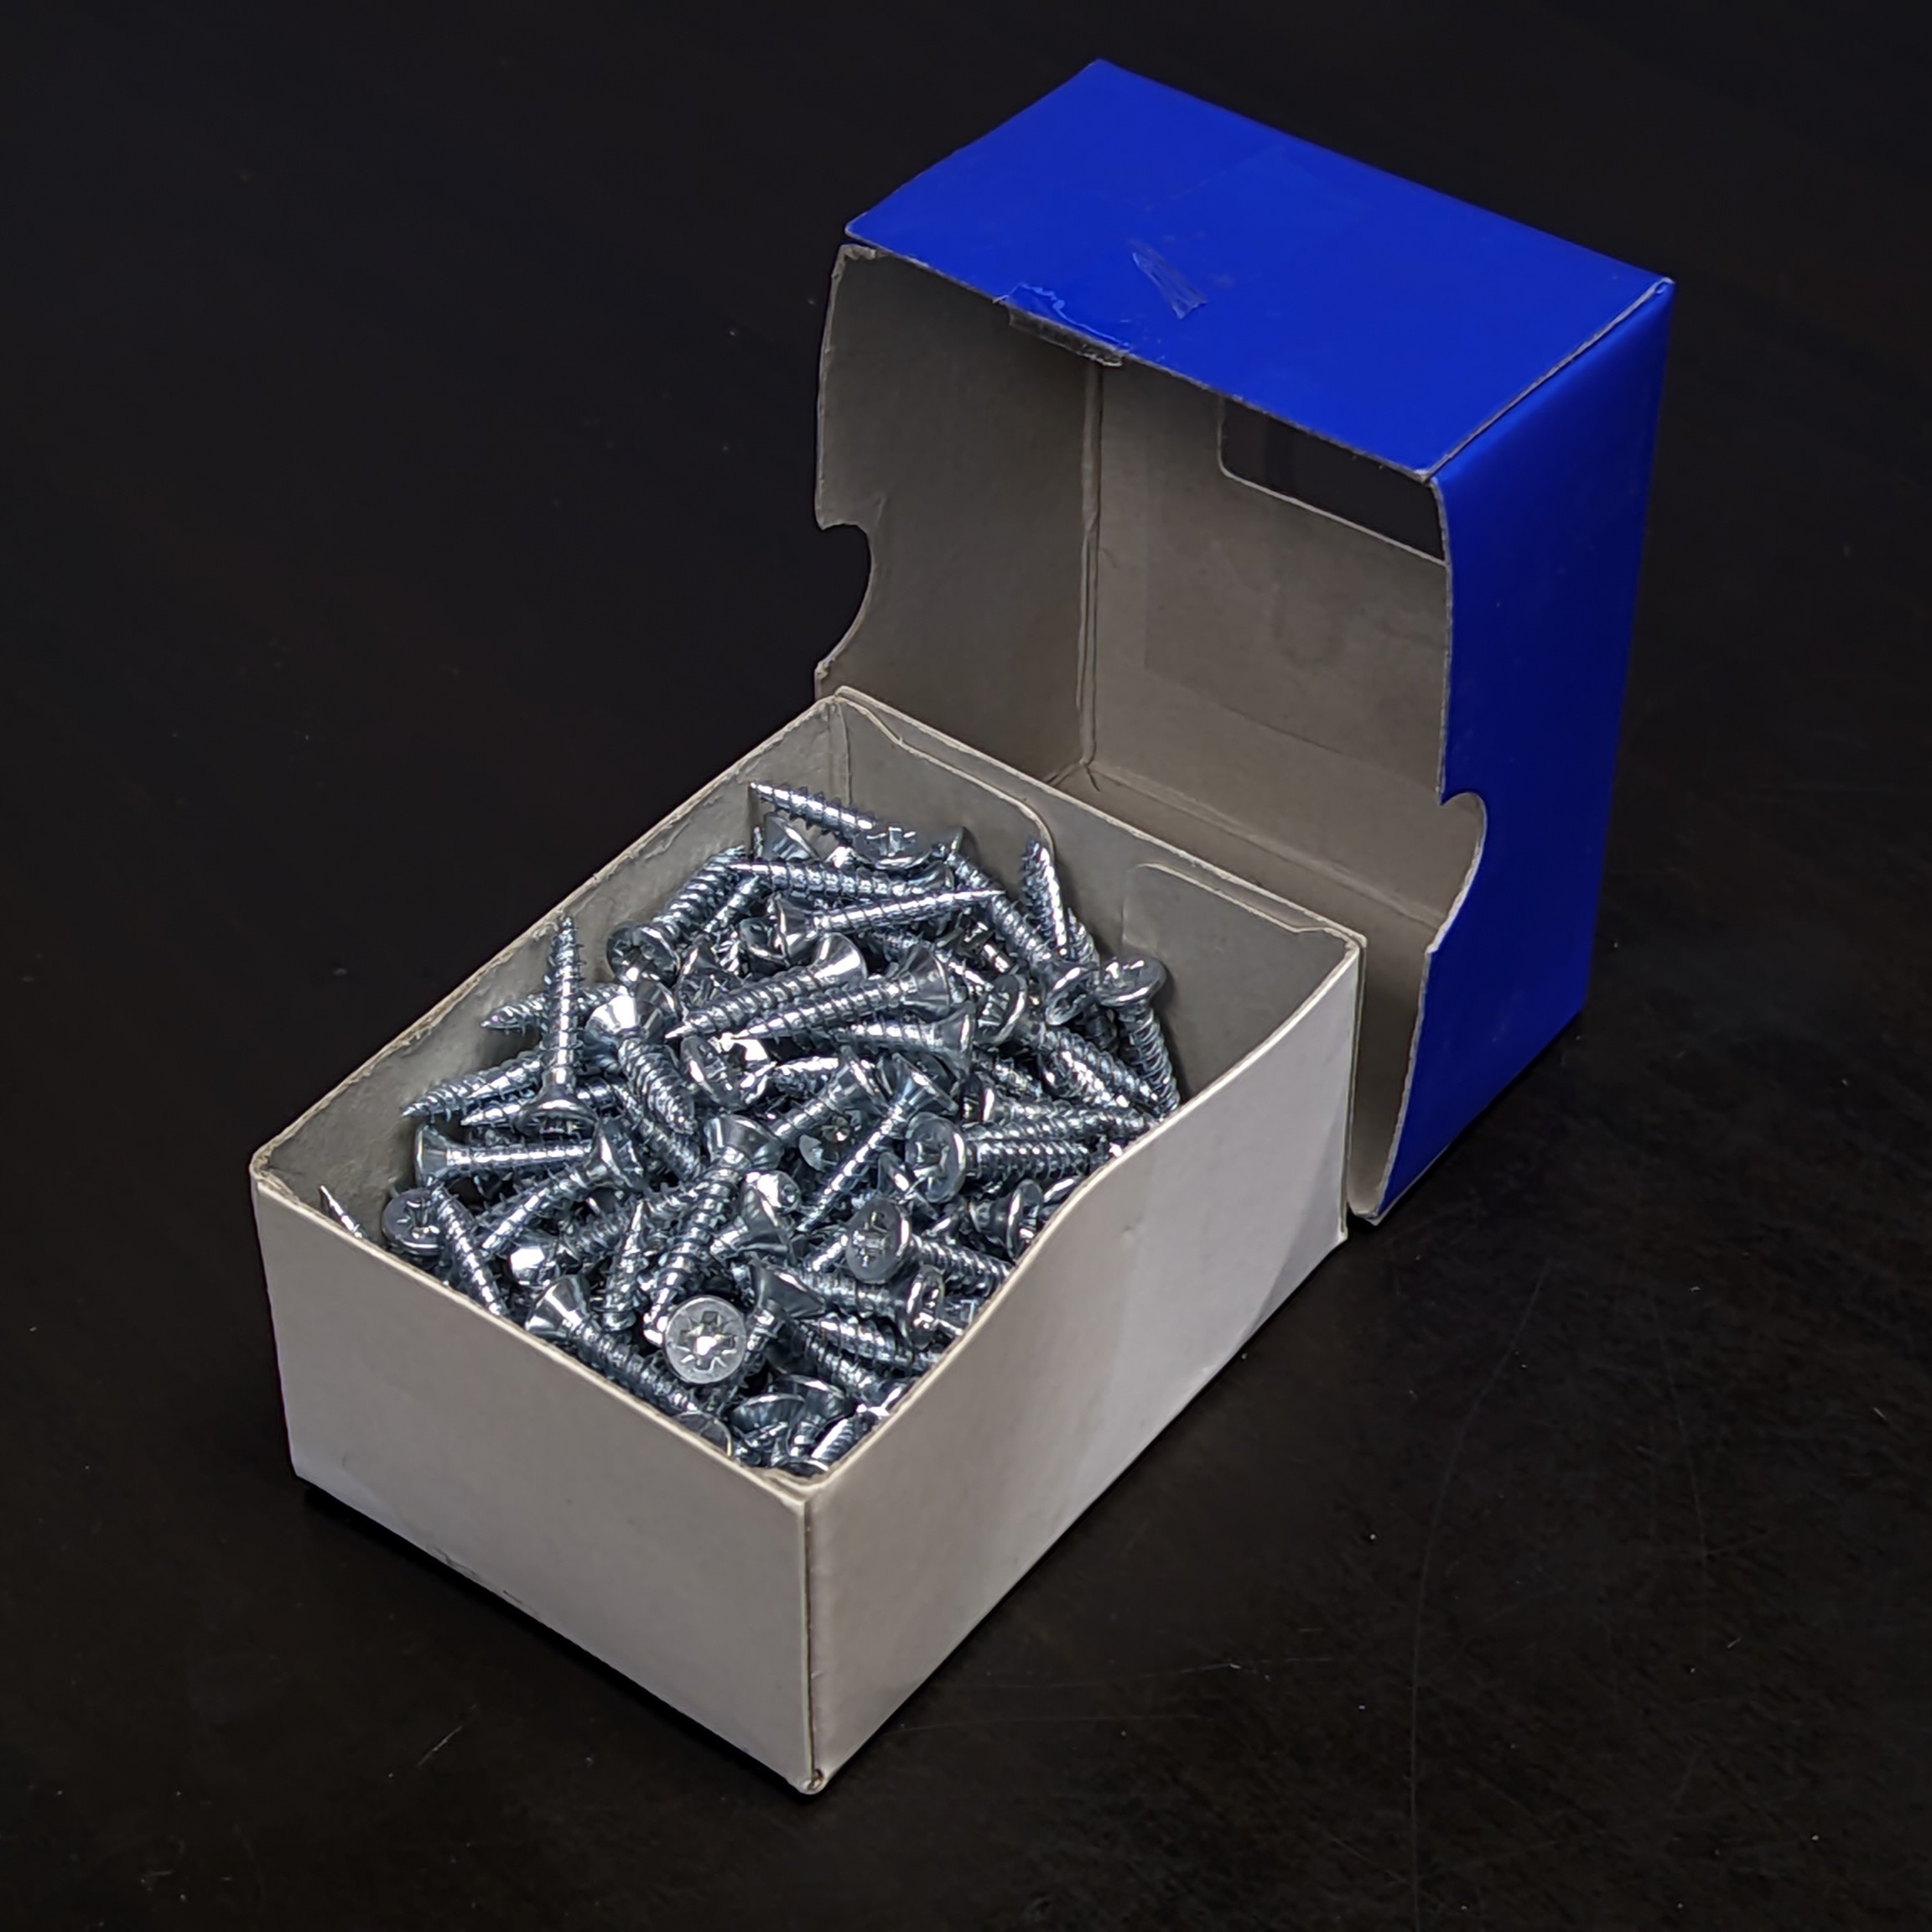 Pozi Zinc Plated Wood Screws 6x⅝" 3.5x16mm box of 200